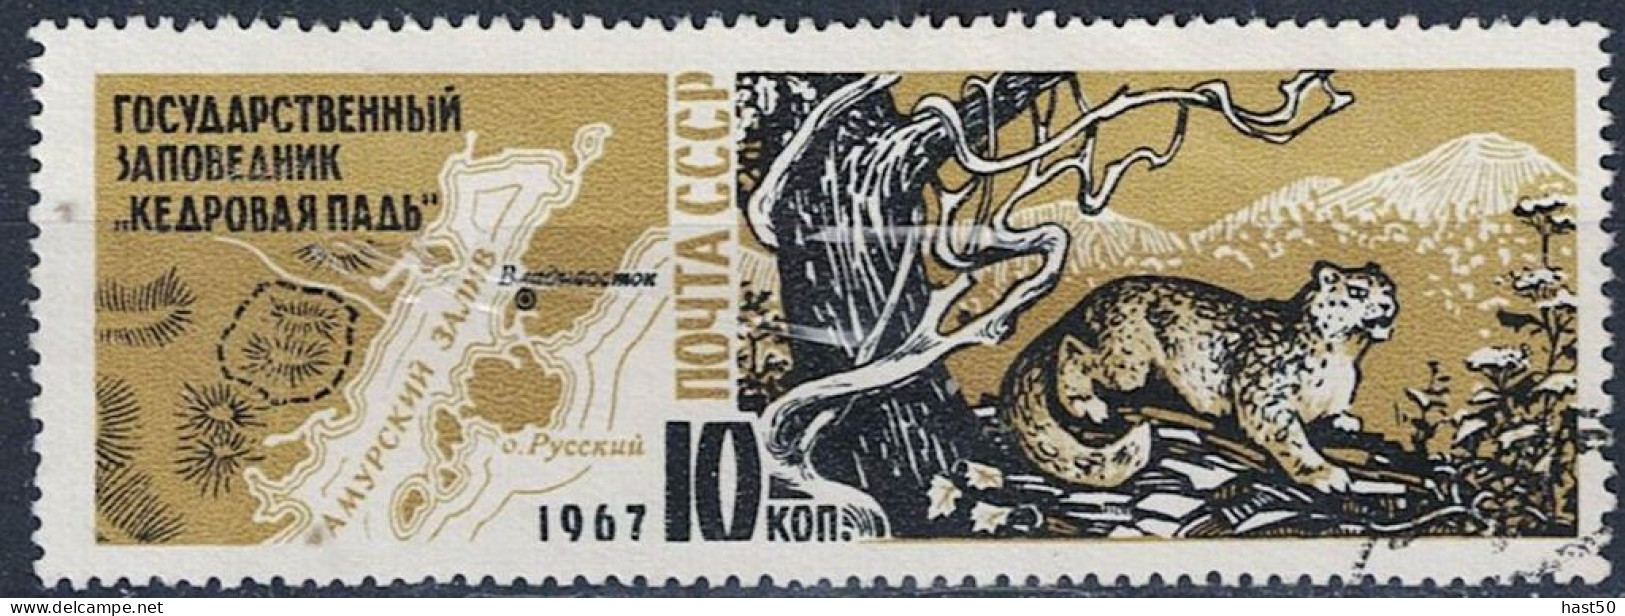 Sowjetunion UdSSR - Schneeleopard (Panthera Uncia) Vor Gebirgslandschaft (MiNr. 3400) 1967 - Gest Used Obl - Gebruikt